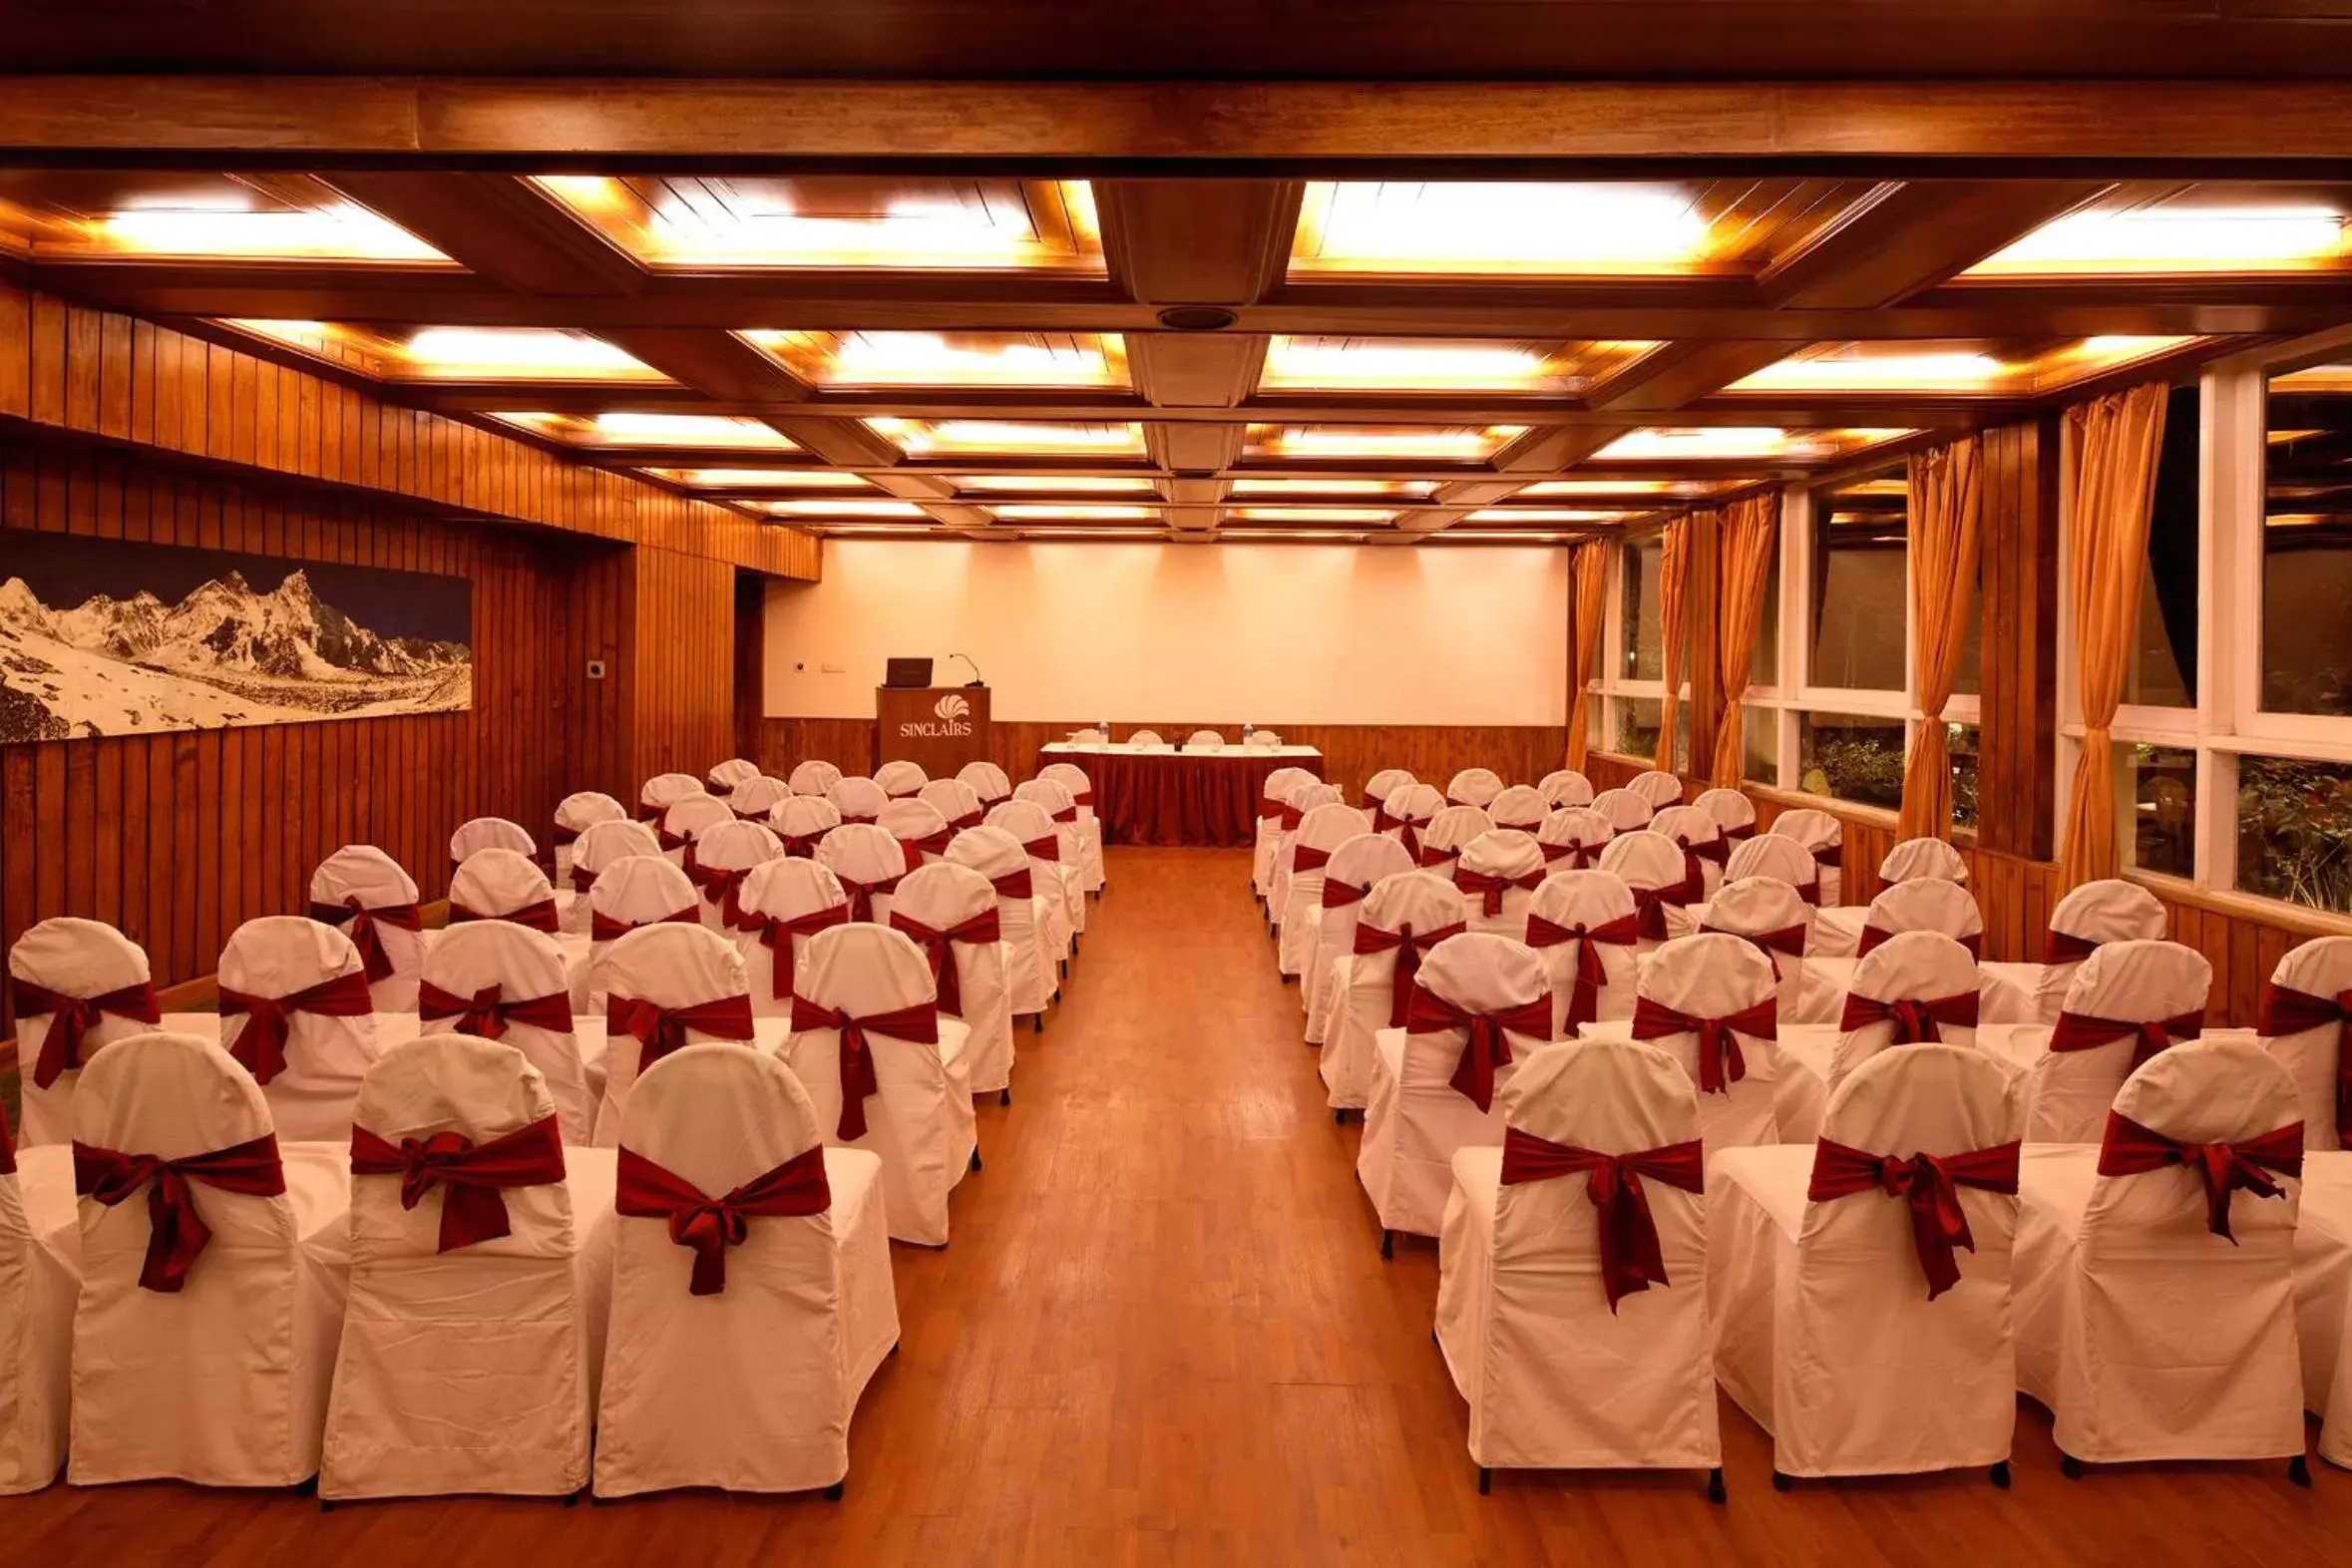 Banquet/Function facilities, Banquet Facilities in Sinclairs Darjeeling